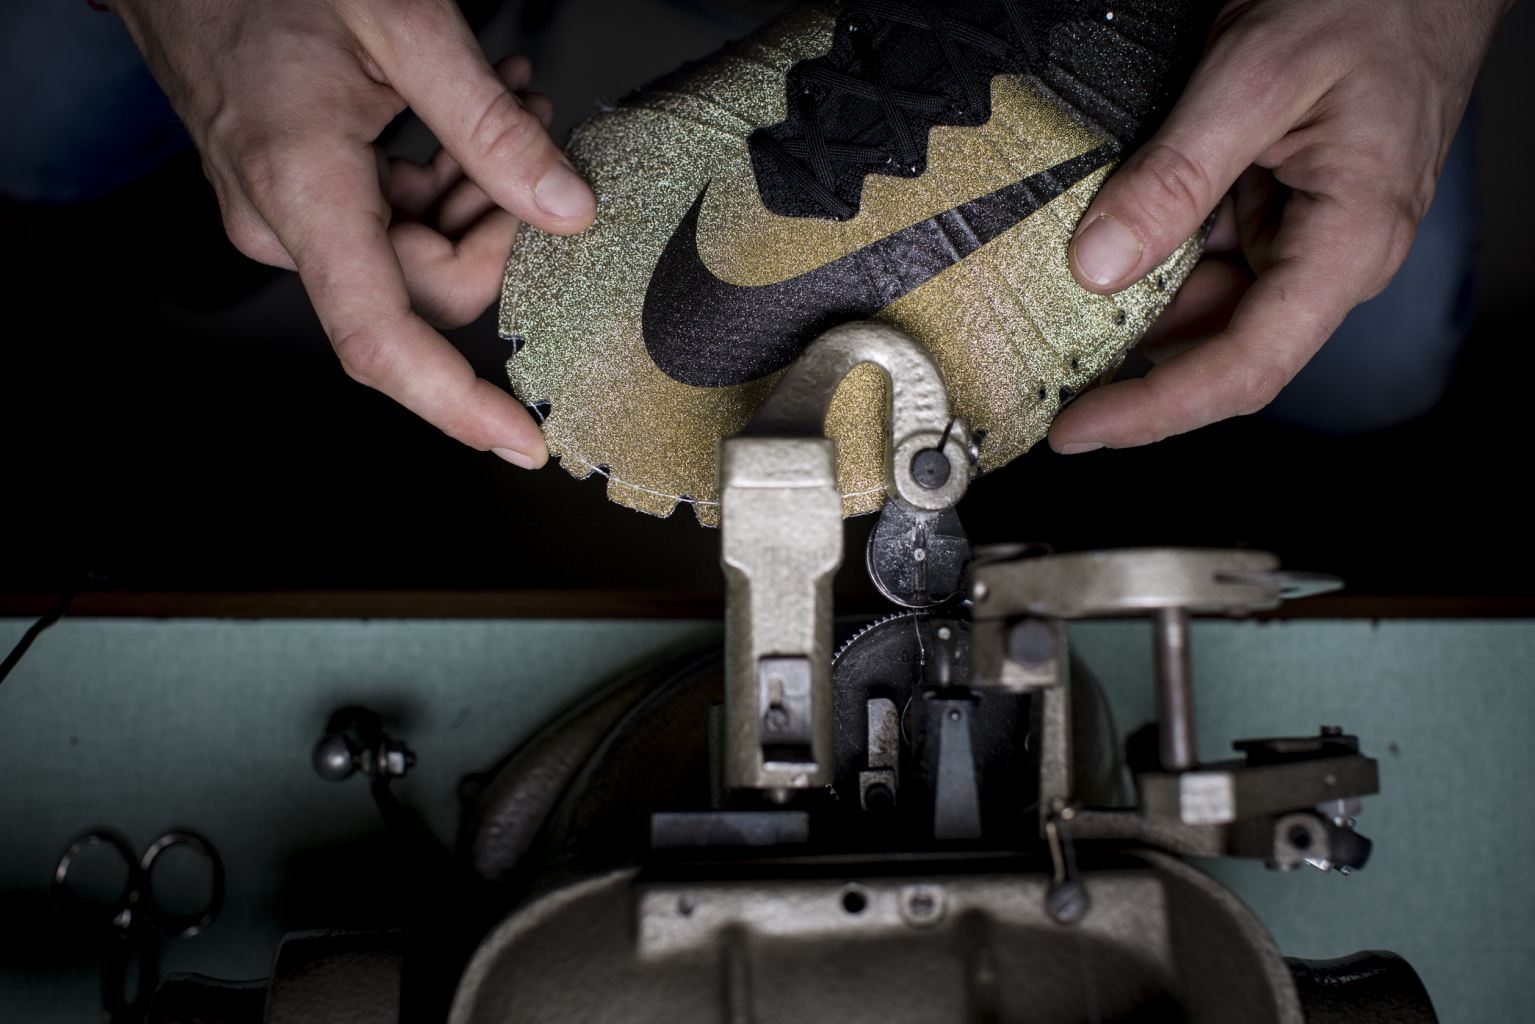 بالصور نايكي تطرح حذاء جديد بعد تتويج الدون بالكرة الذهبية 2014